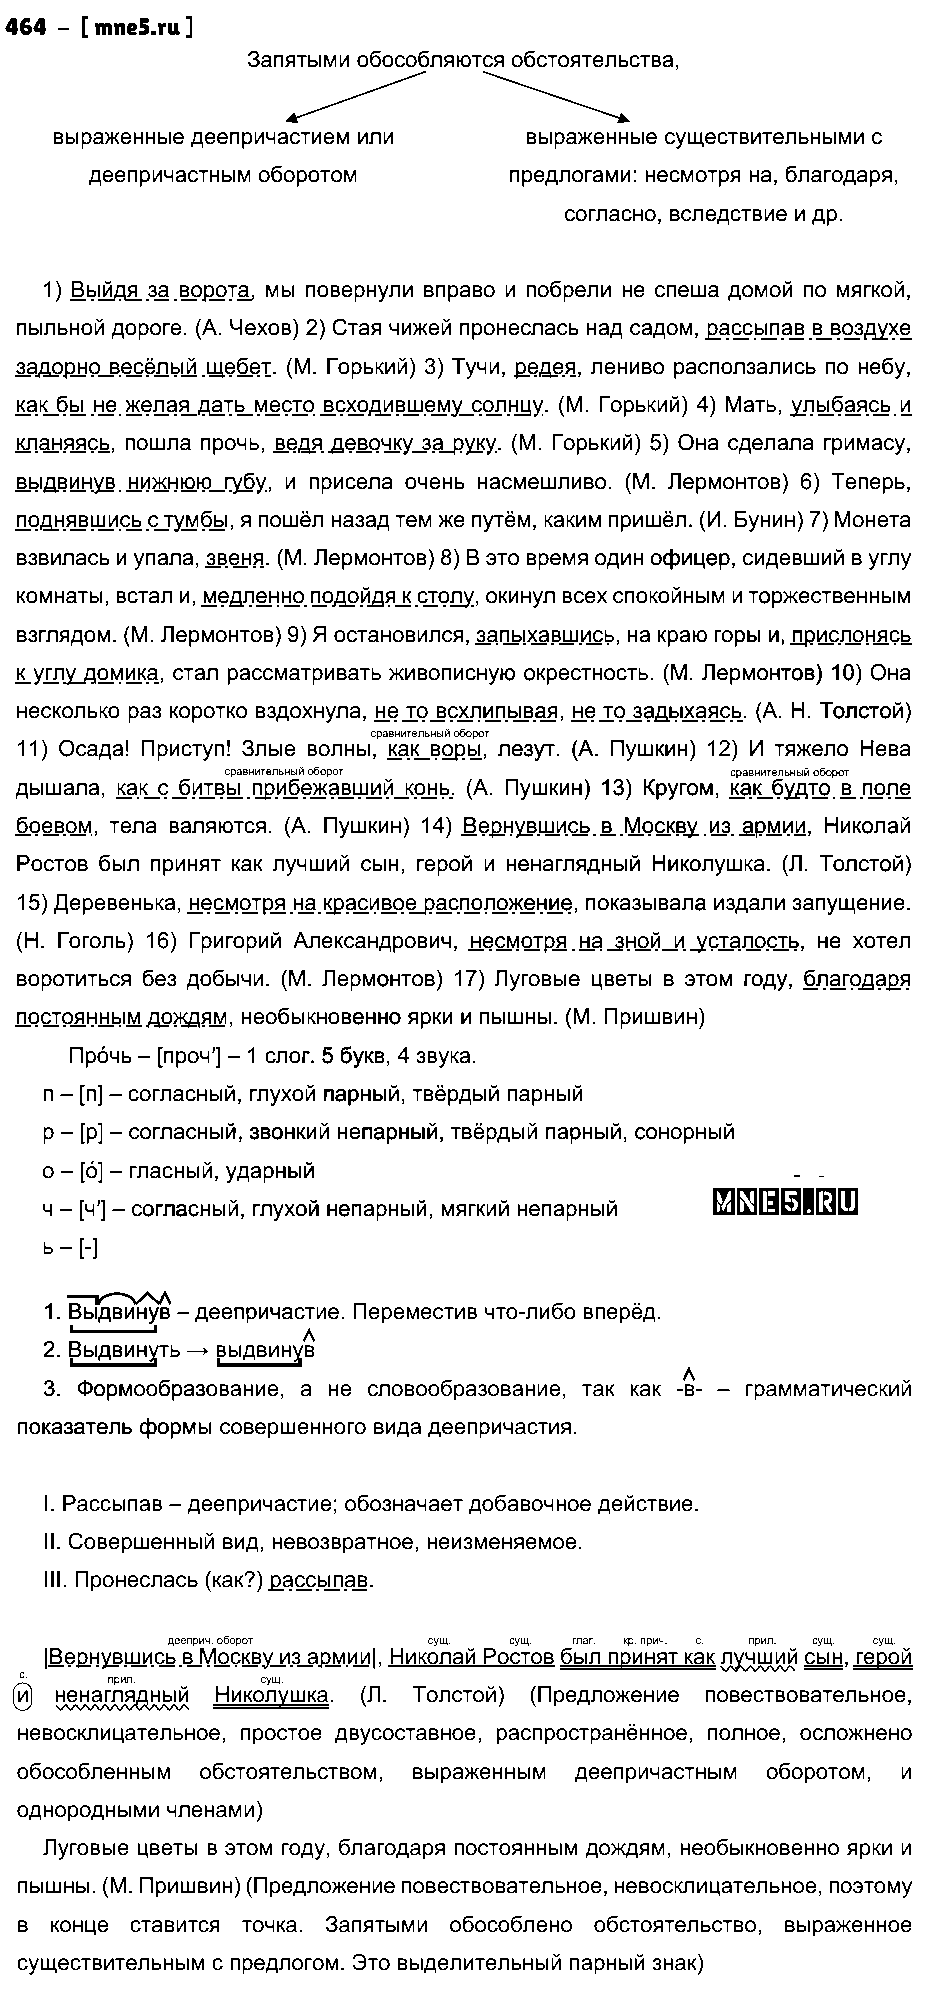 ГДЗ Русский язык 9 класс - 464